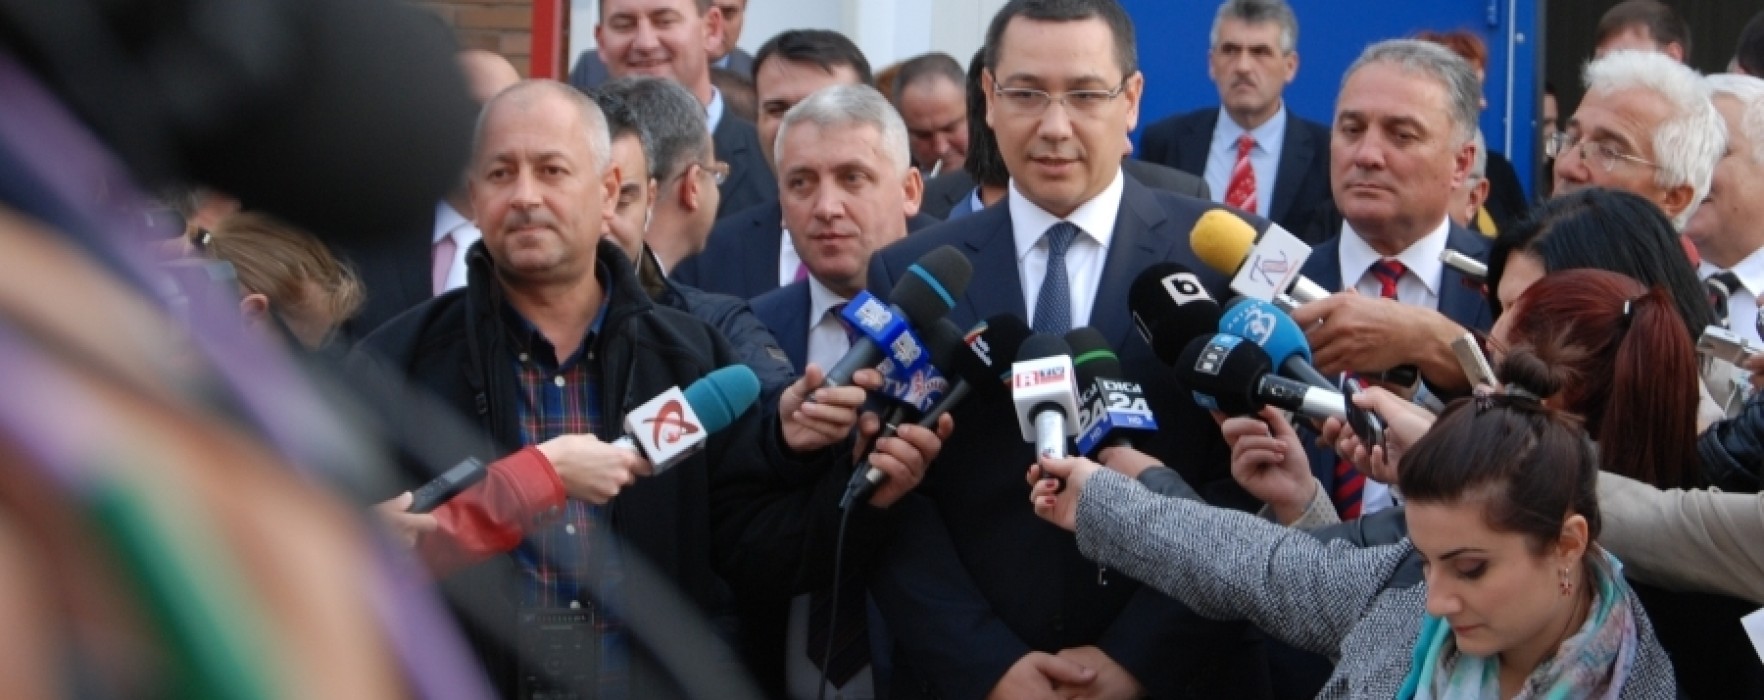 Victor Ponta, sâmbătă la Târgovişte la o acţiune PES activists